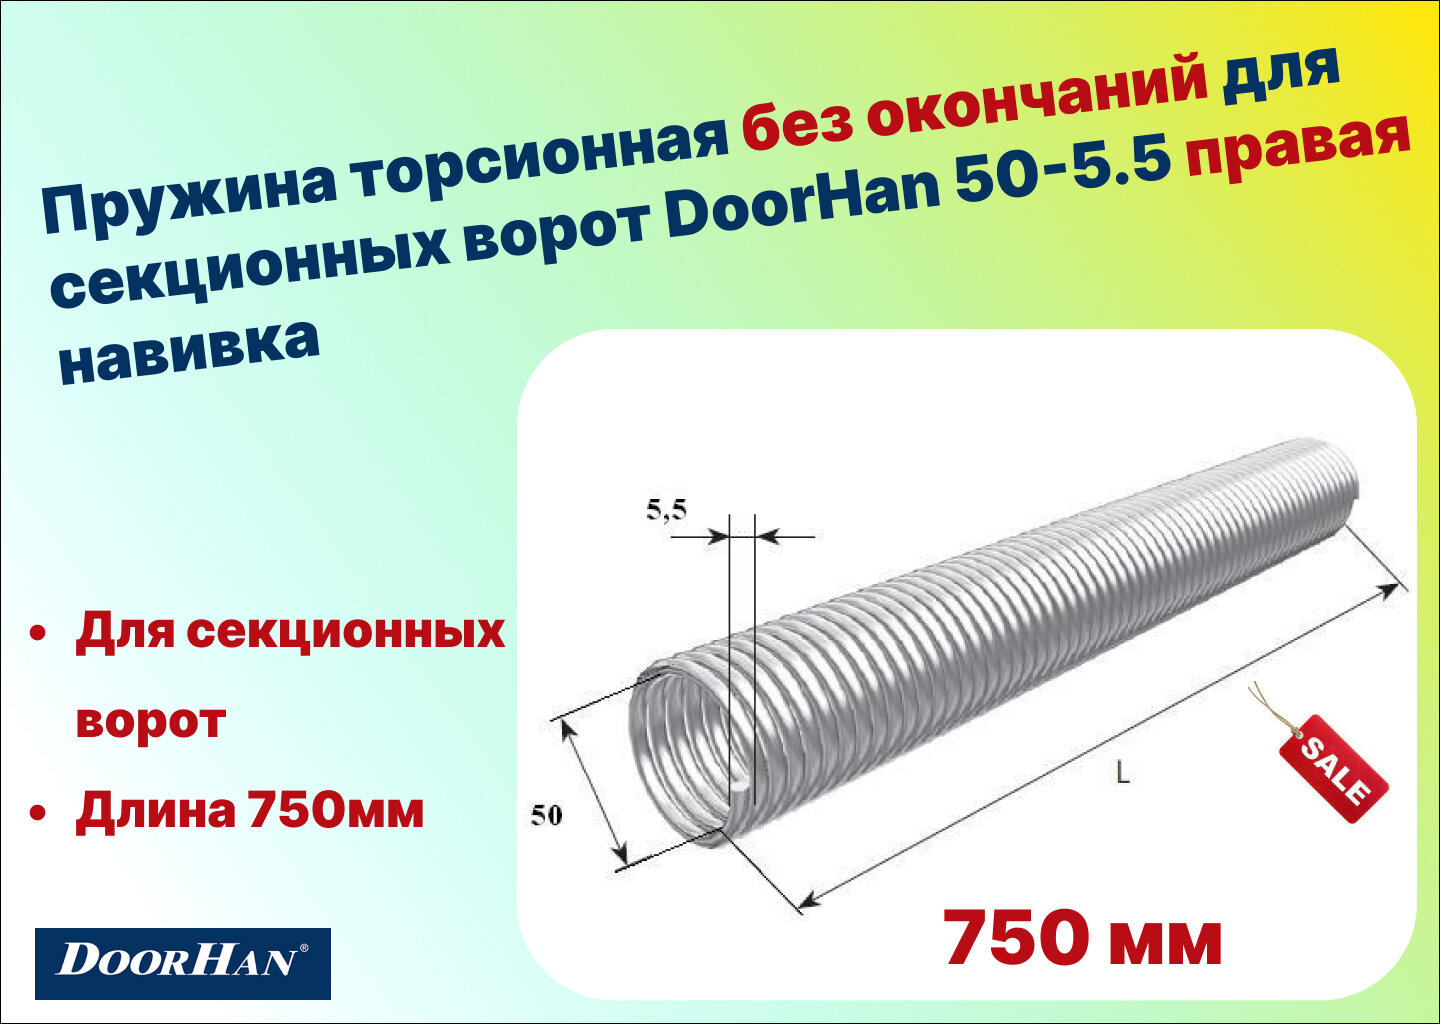 Пружина торсионная без окончаний для секционных ворот DoorHan 50-5.5 правая навивка, длина 750 мм (32055/mR/RAL7004 )